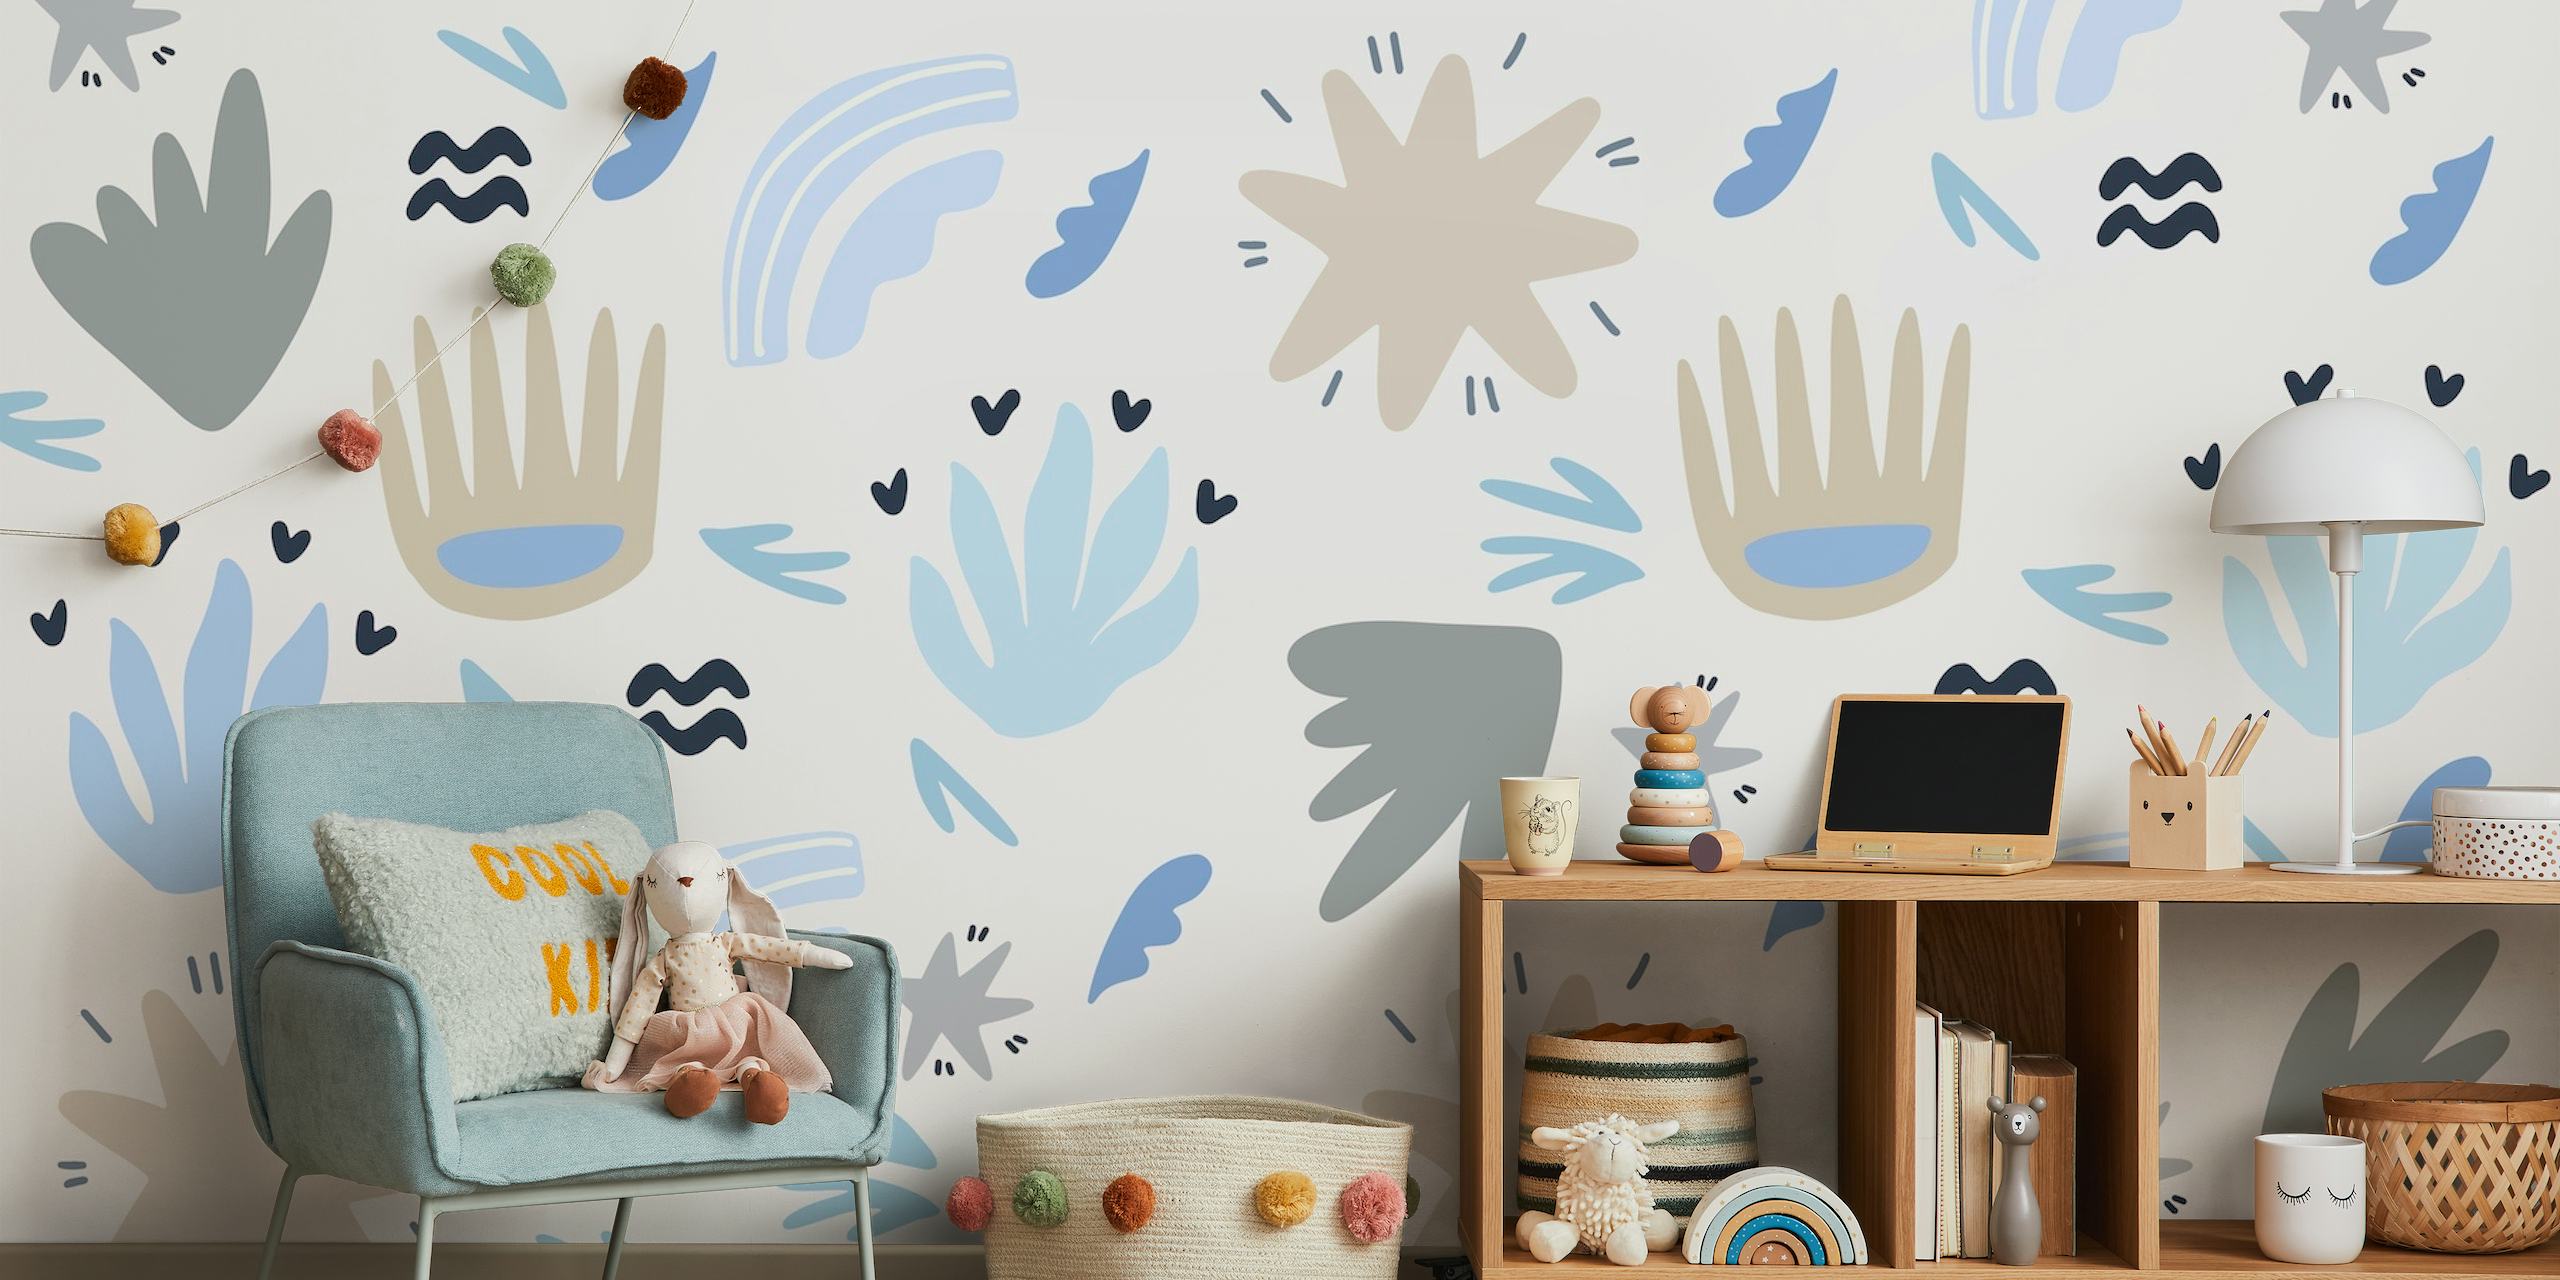 Patrón floral abstracto y formas en tonos azules, grises y blancos para fotomural infantil